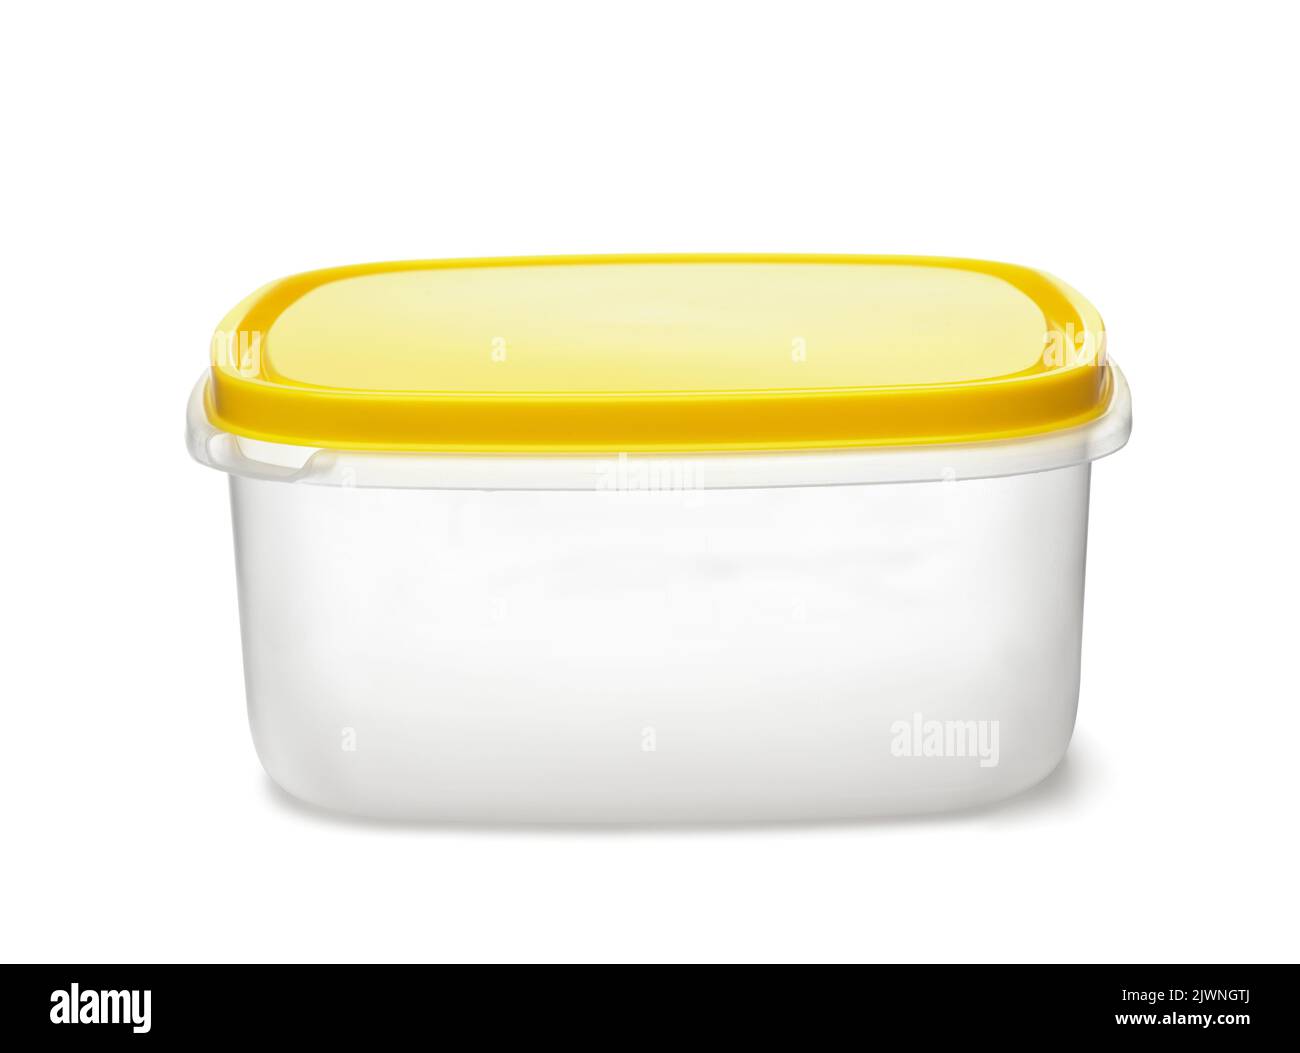 Vista frontal del contenedor de plástico reutilizable para alimentos con tapa amarilla aislada sobre blanco Foto de stock